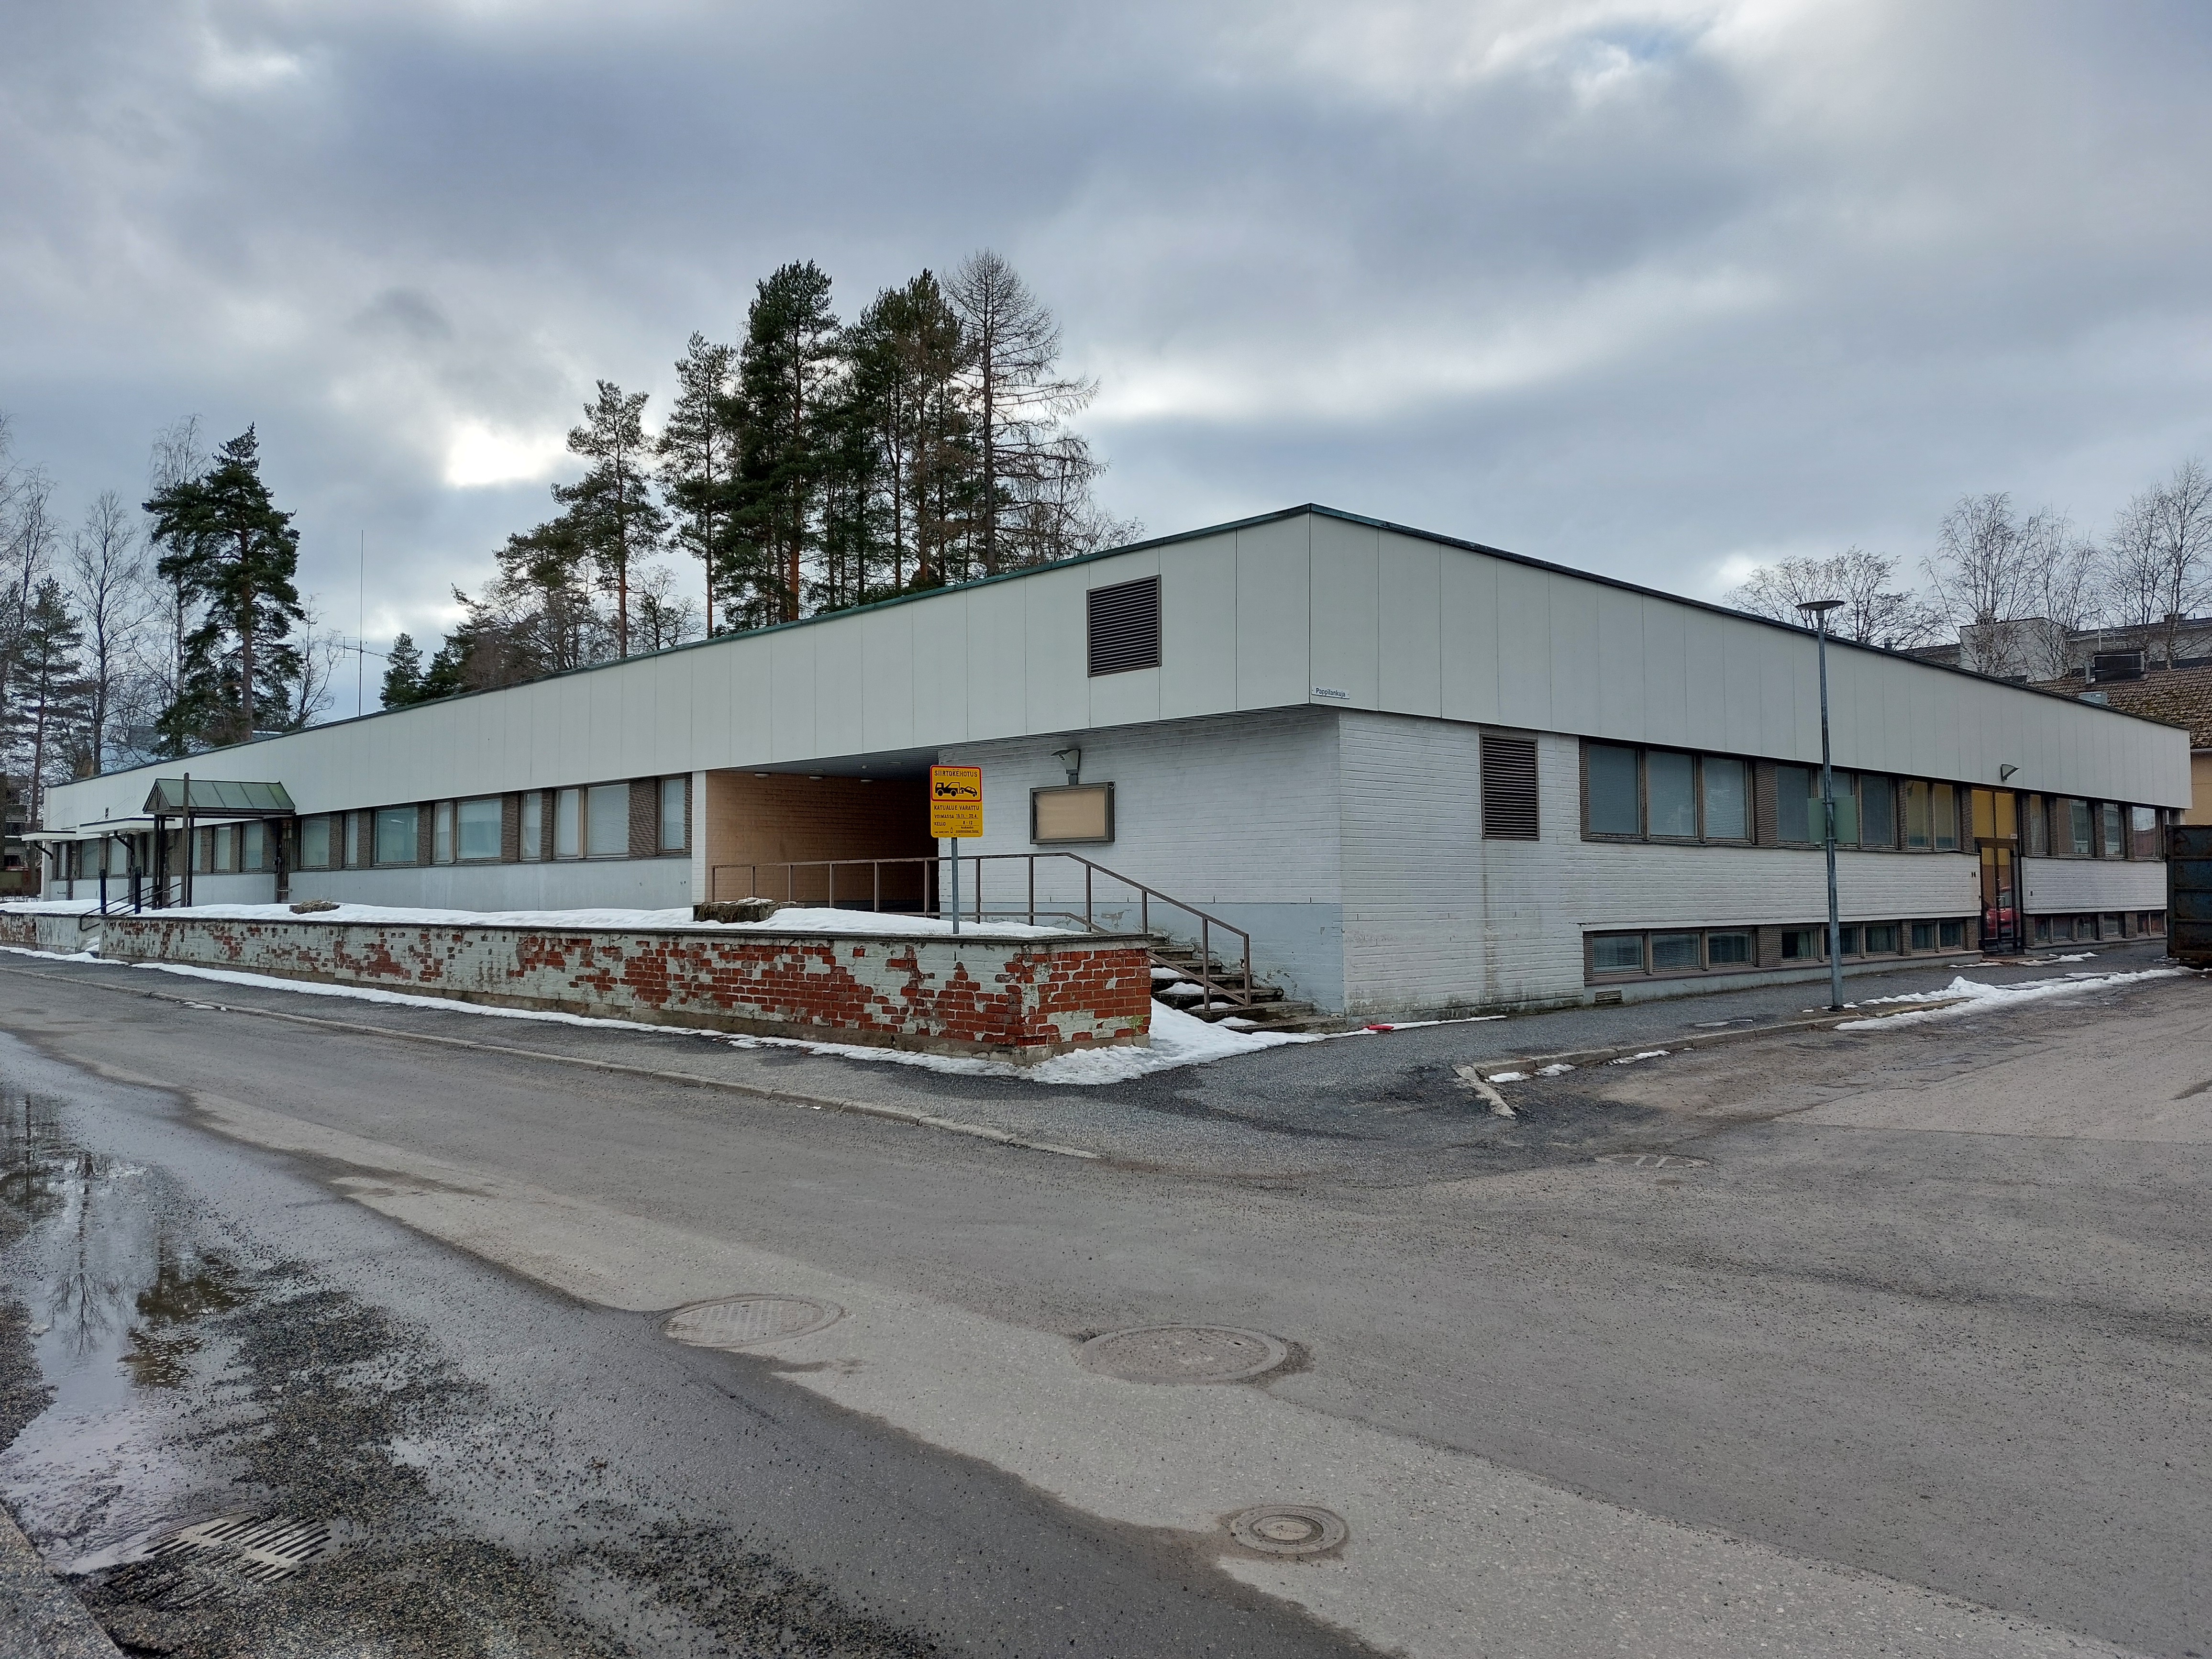 Heinolan vanha seurakuntakeskus on yksikerroksinen, vaalea rakennus kadun kulmassa.